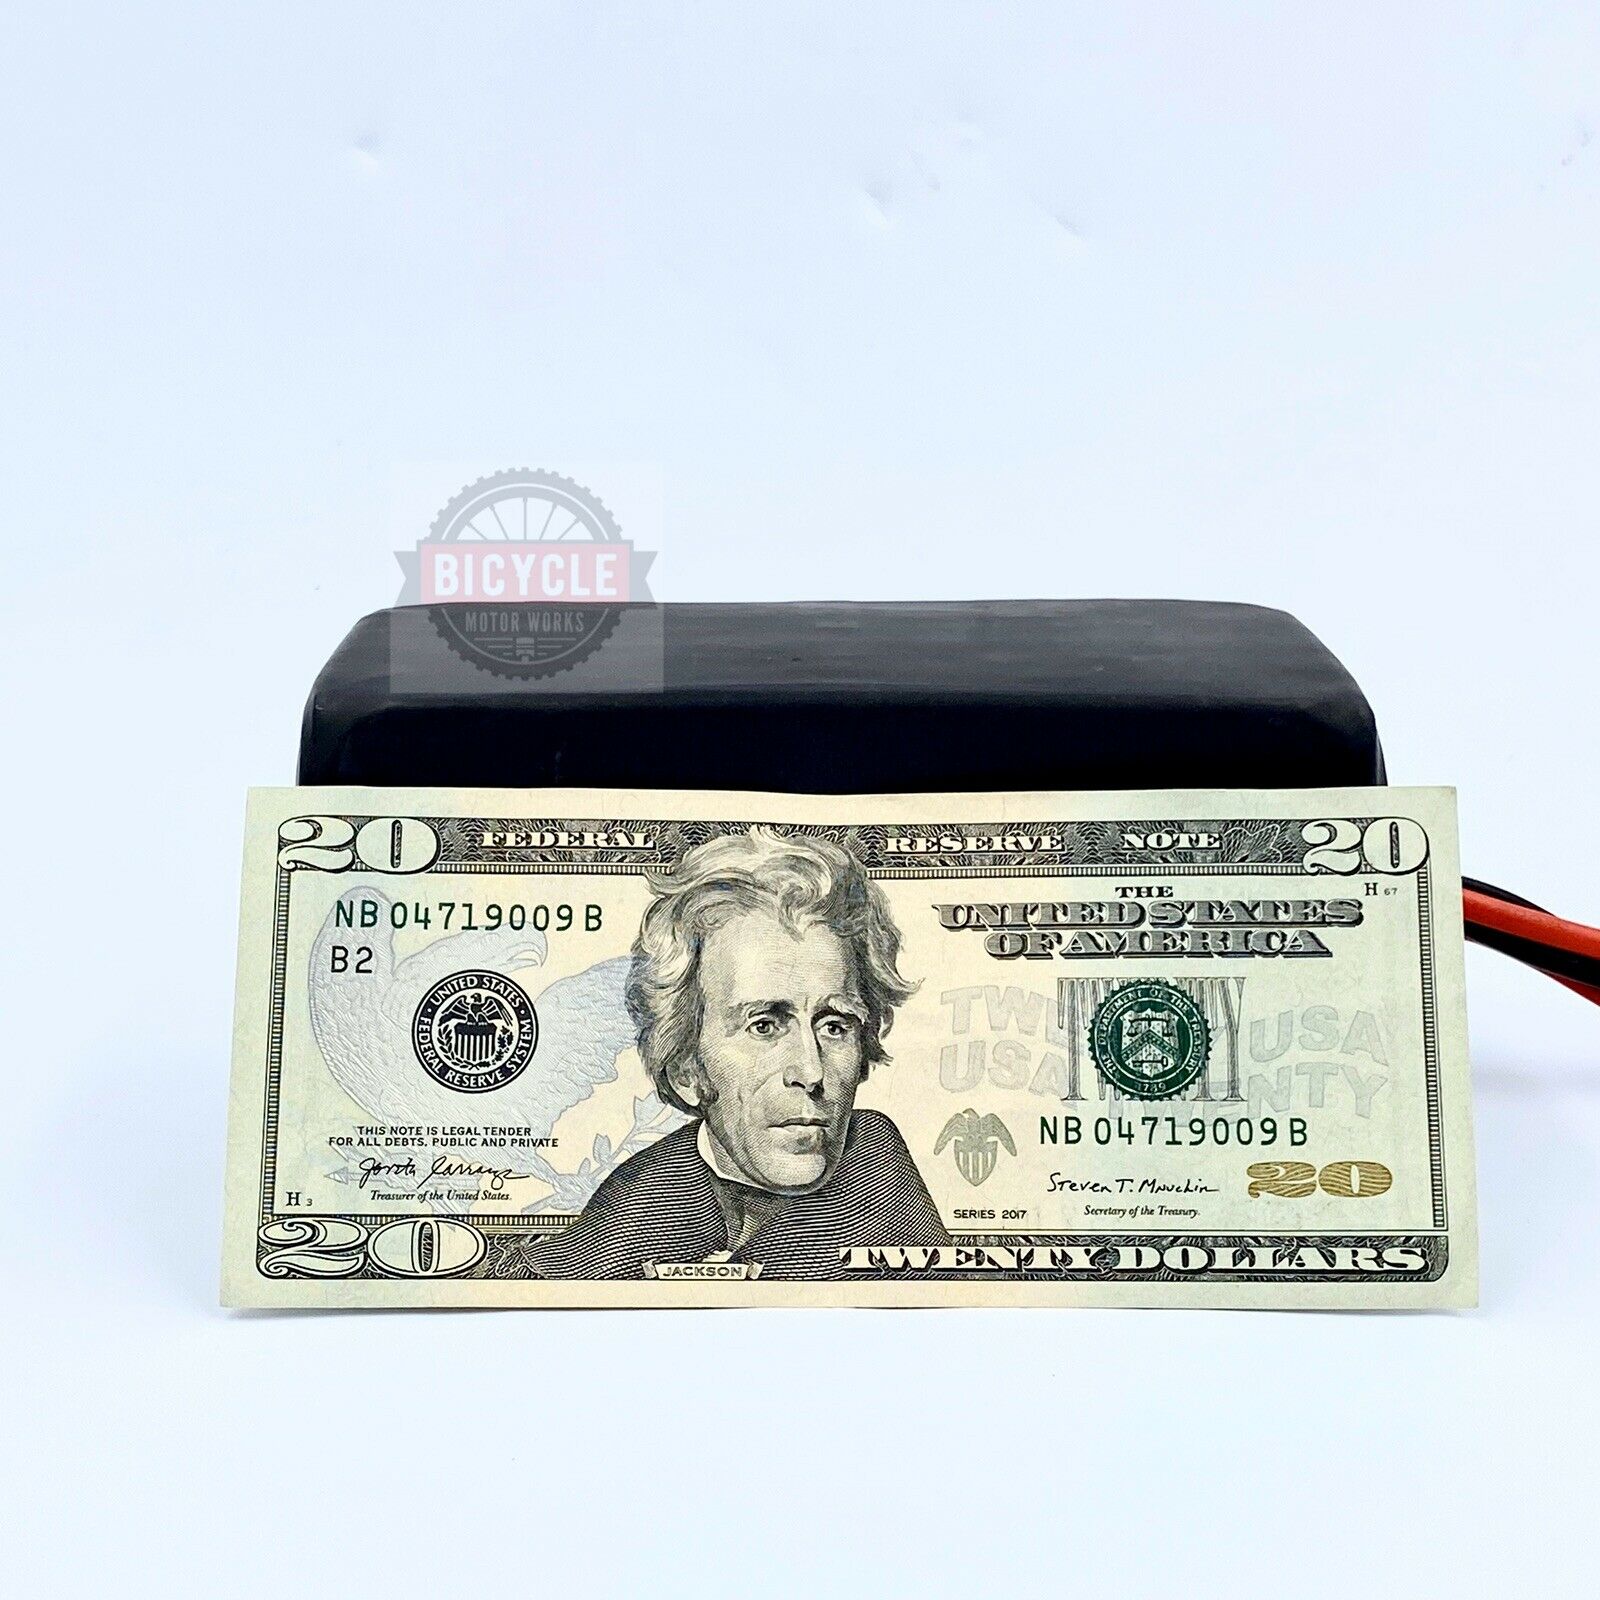 A fake twenty dollar bill sitting on top of a table.